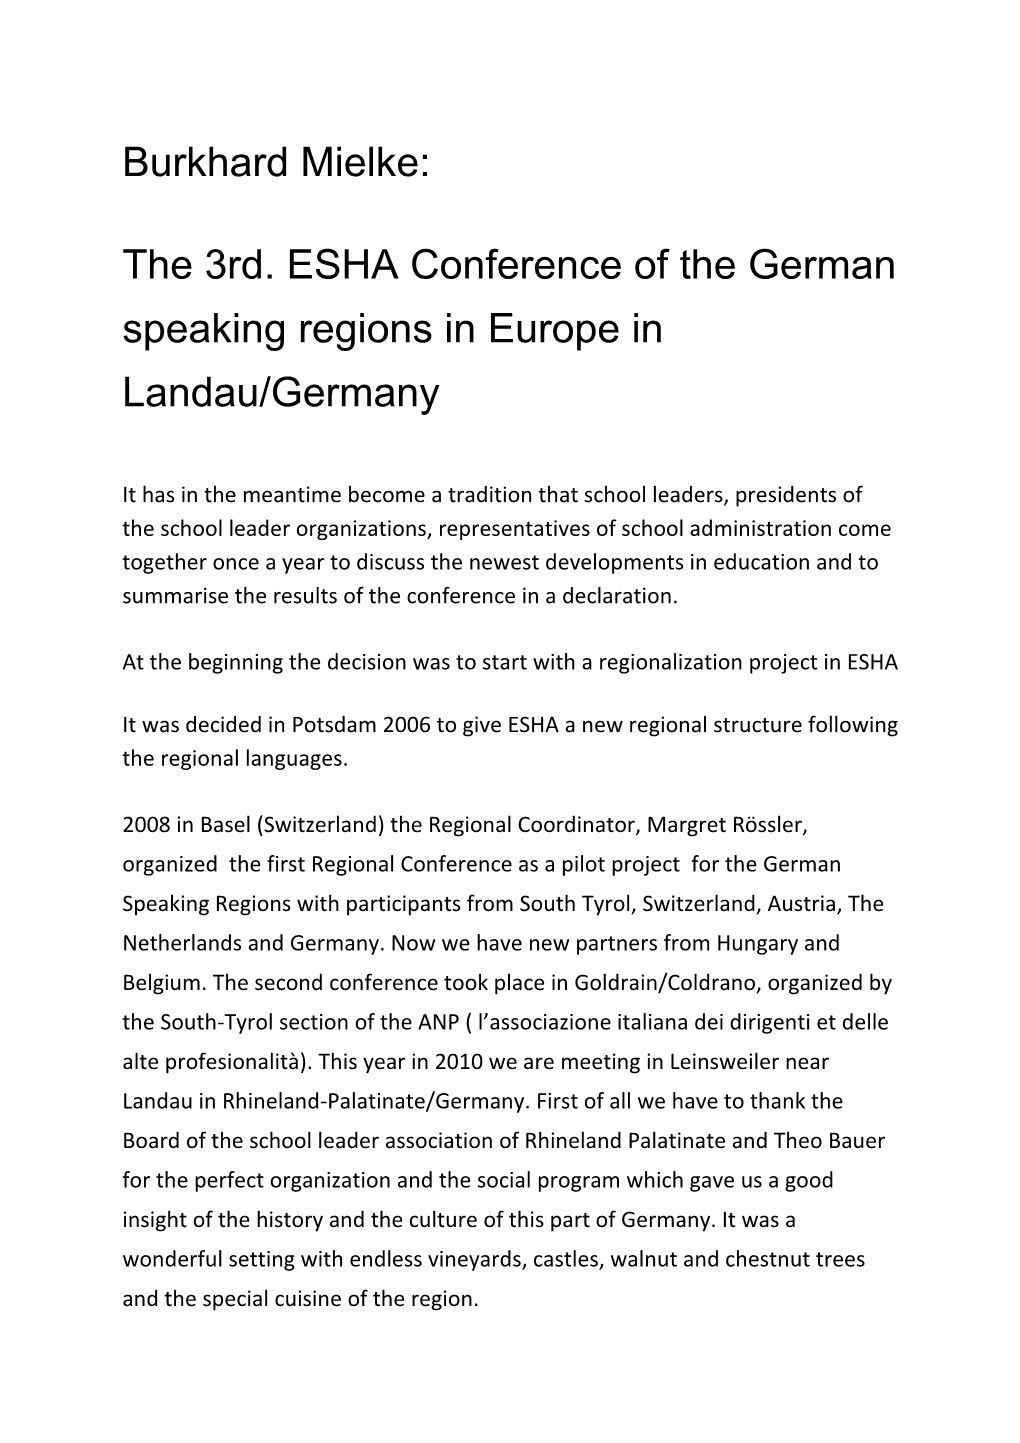 The 3Rd. ESHA Conference of the German Speaking Regions in Europe in Landau/Germany